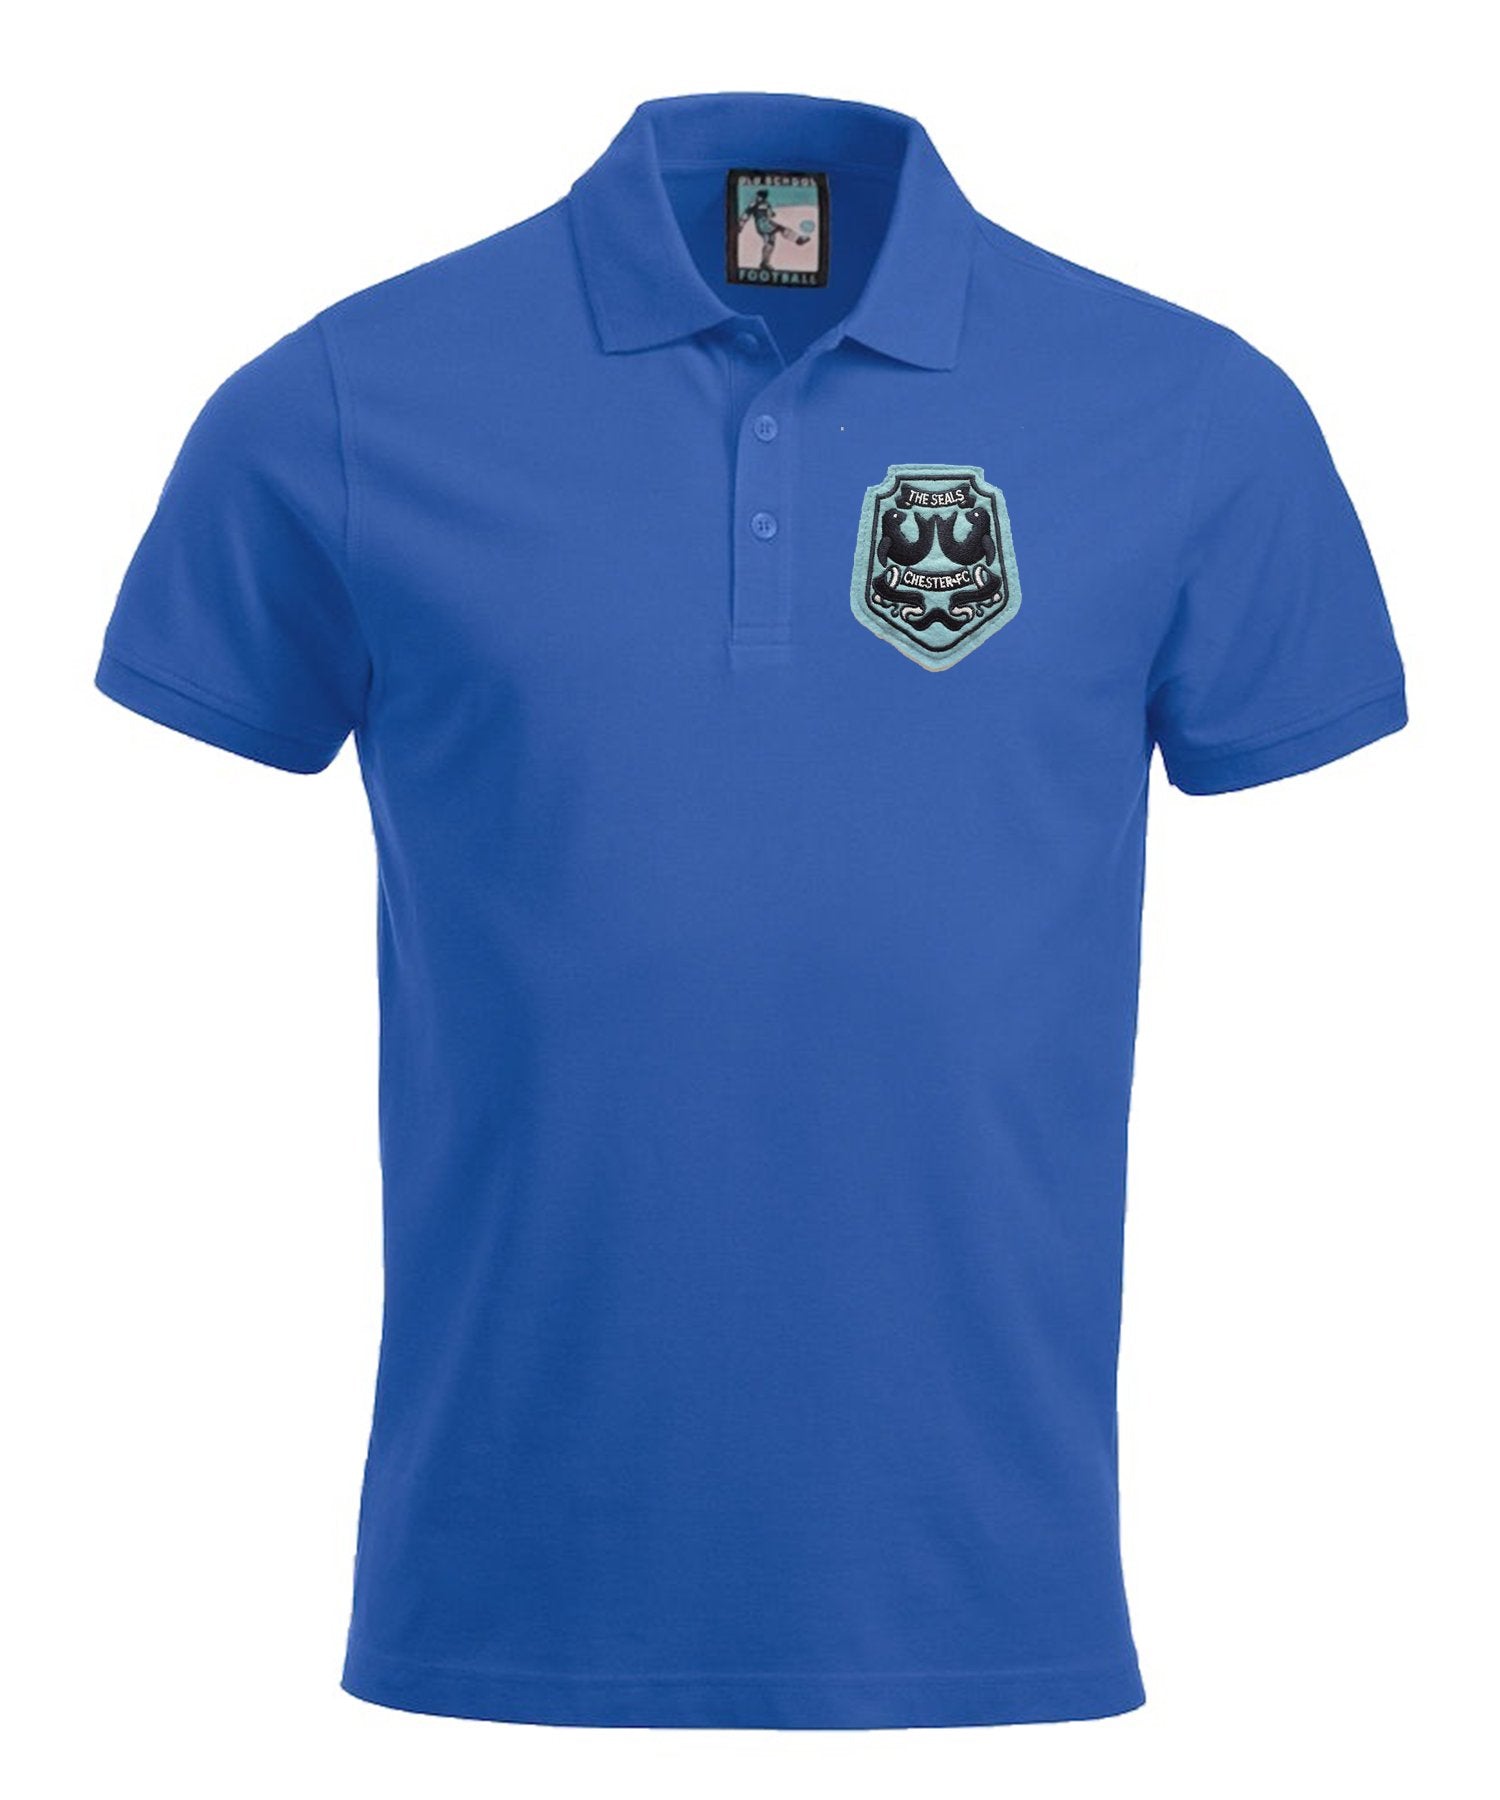 Chester City Retro Football Polo Shirt 1970s - Polo